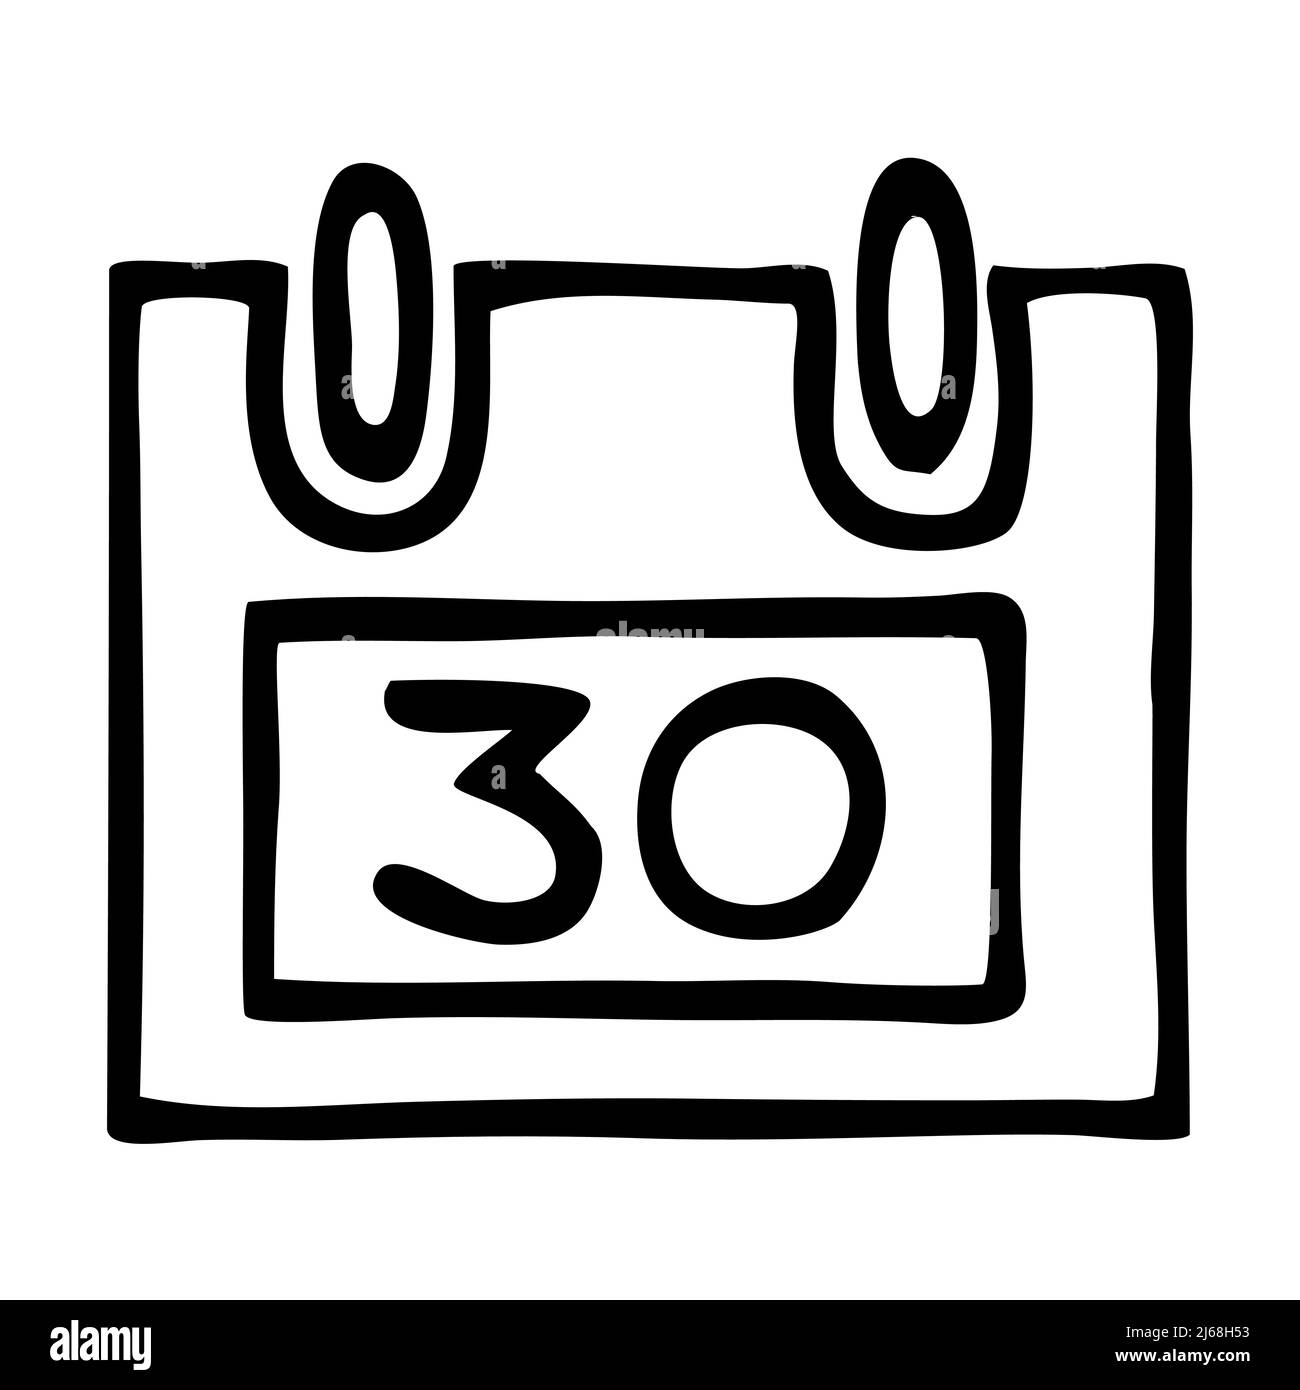 Icona o logo del calendario Doodle fine mese, disegnata a mano con sottile linea nera. Illustrazione Vettoriale